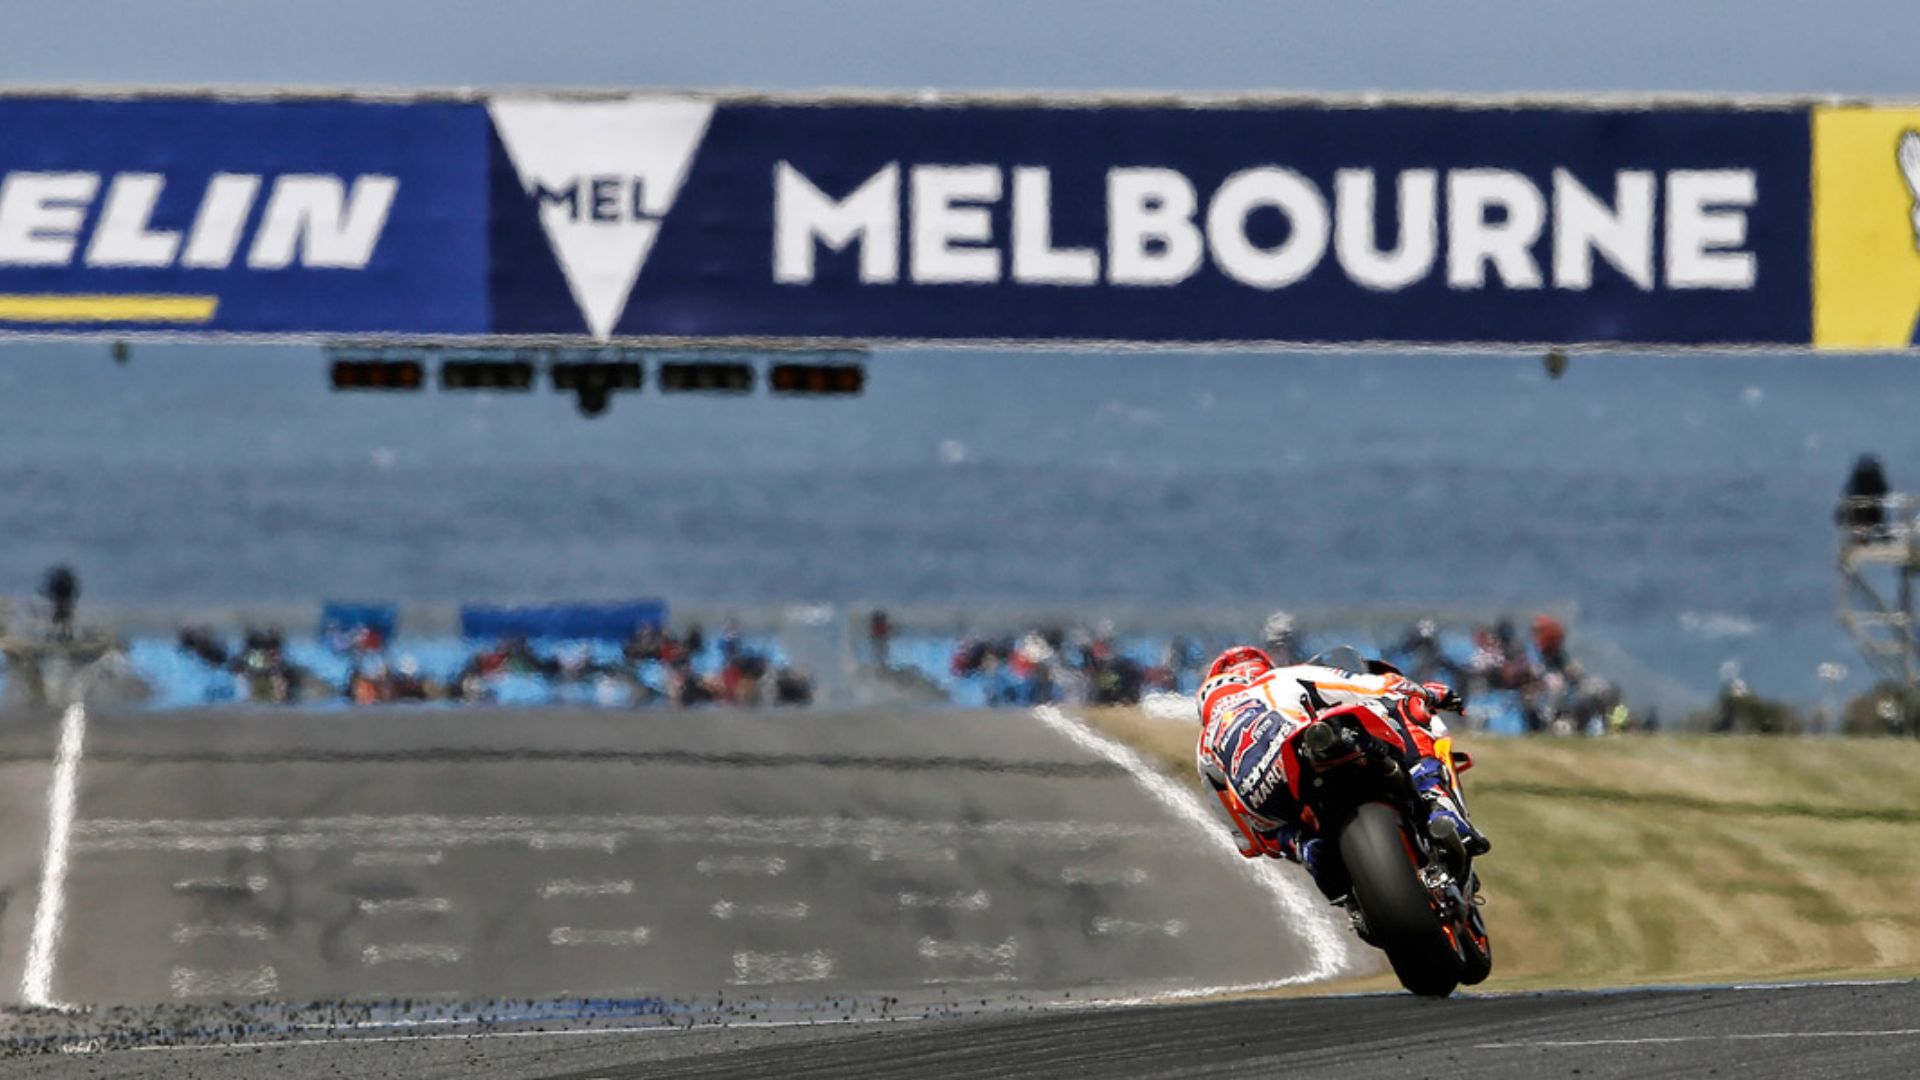 Corrida de MotoGP do GP da Austrália antecipada para sábado pelo mau tempo  - MotoGP - Jornal Record